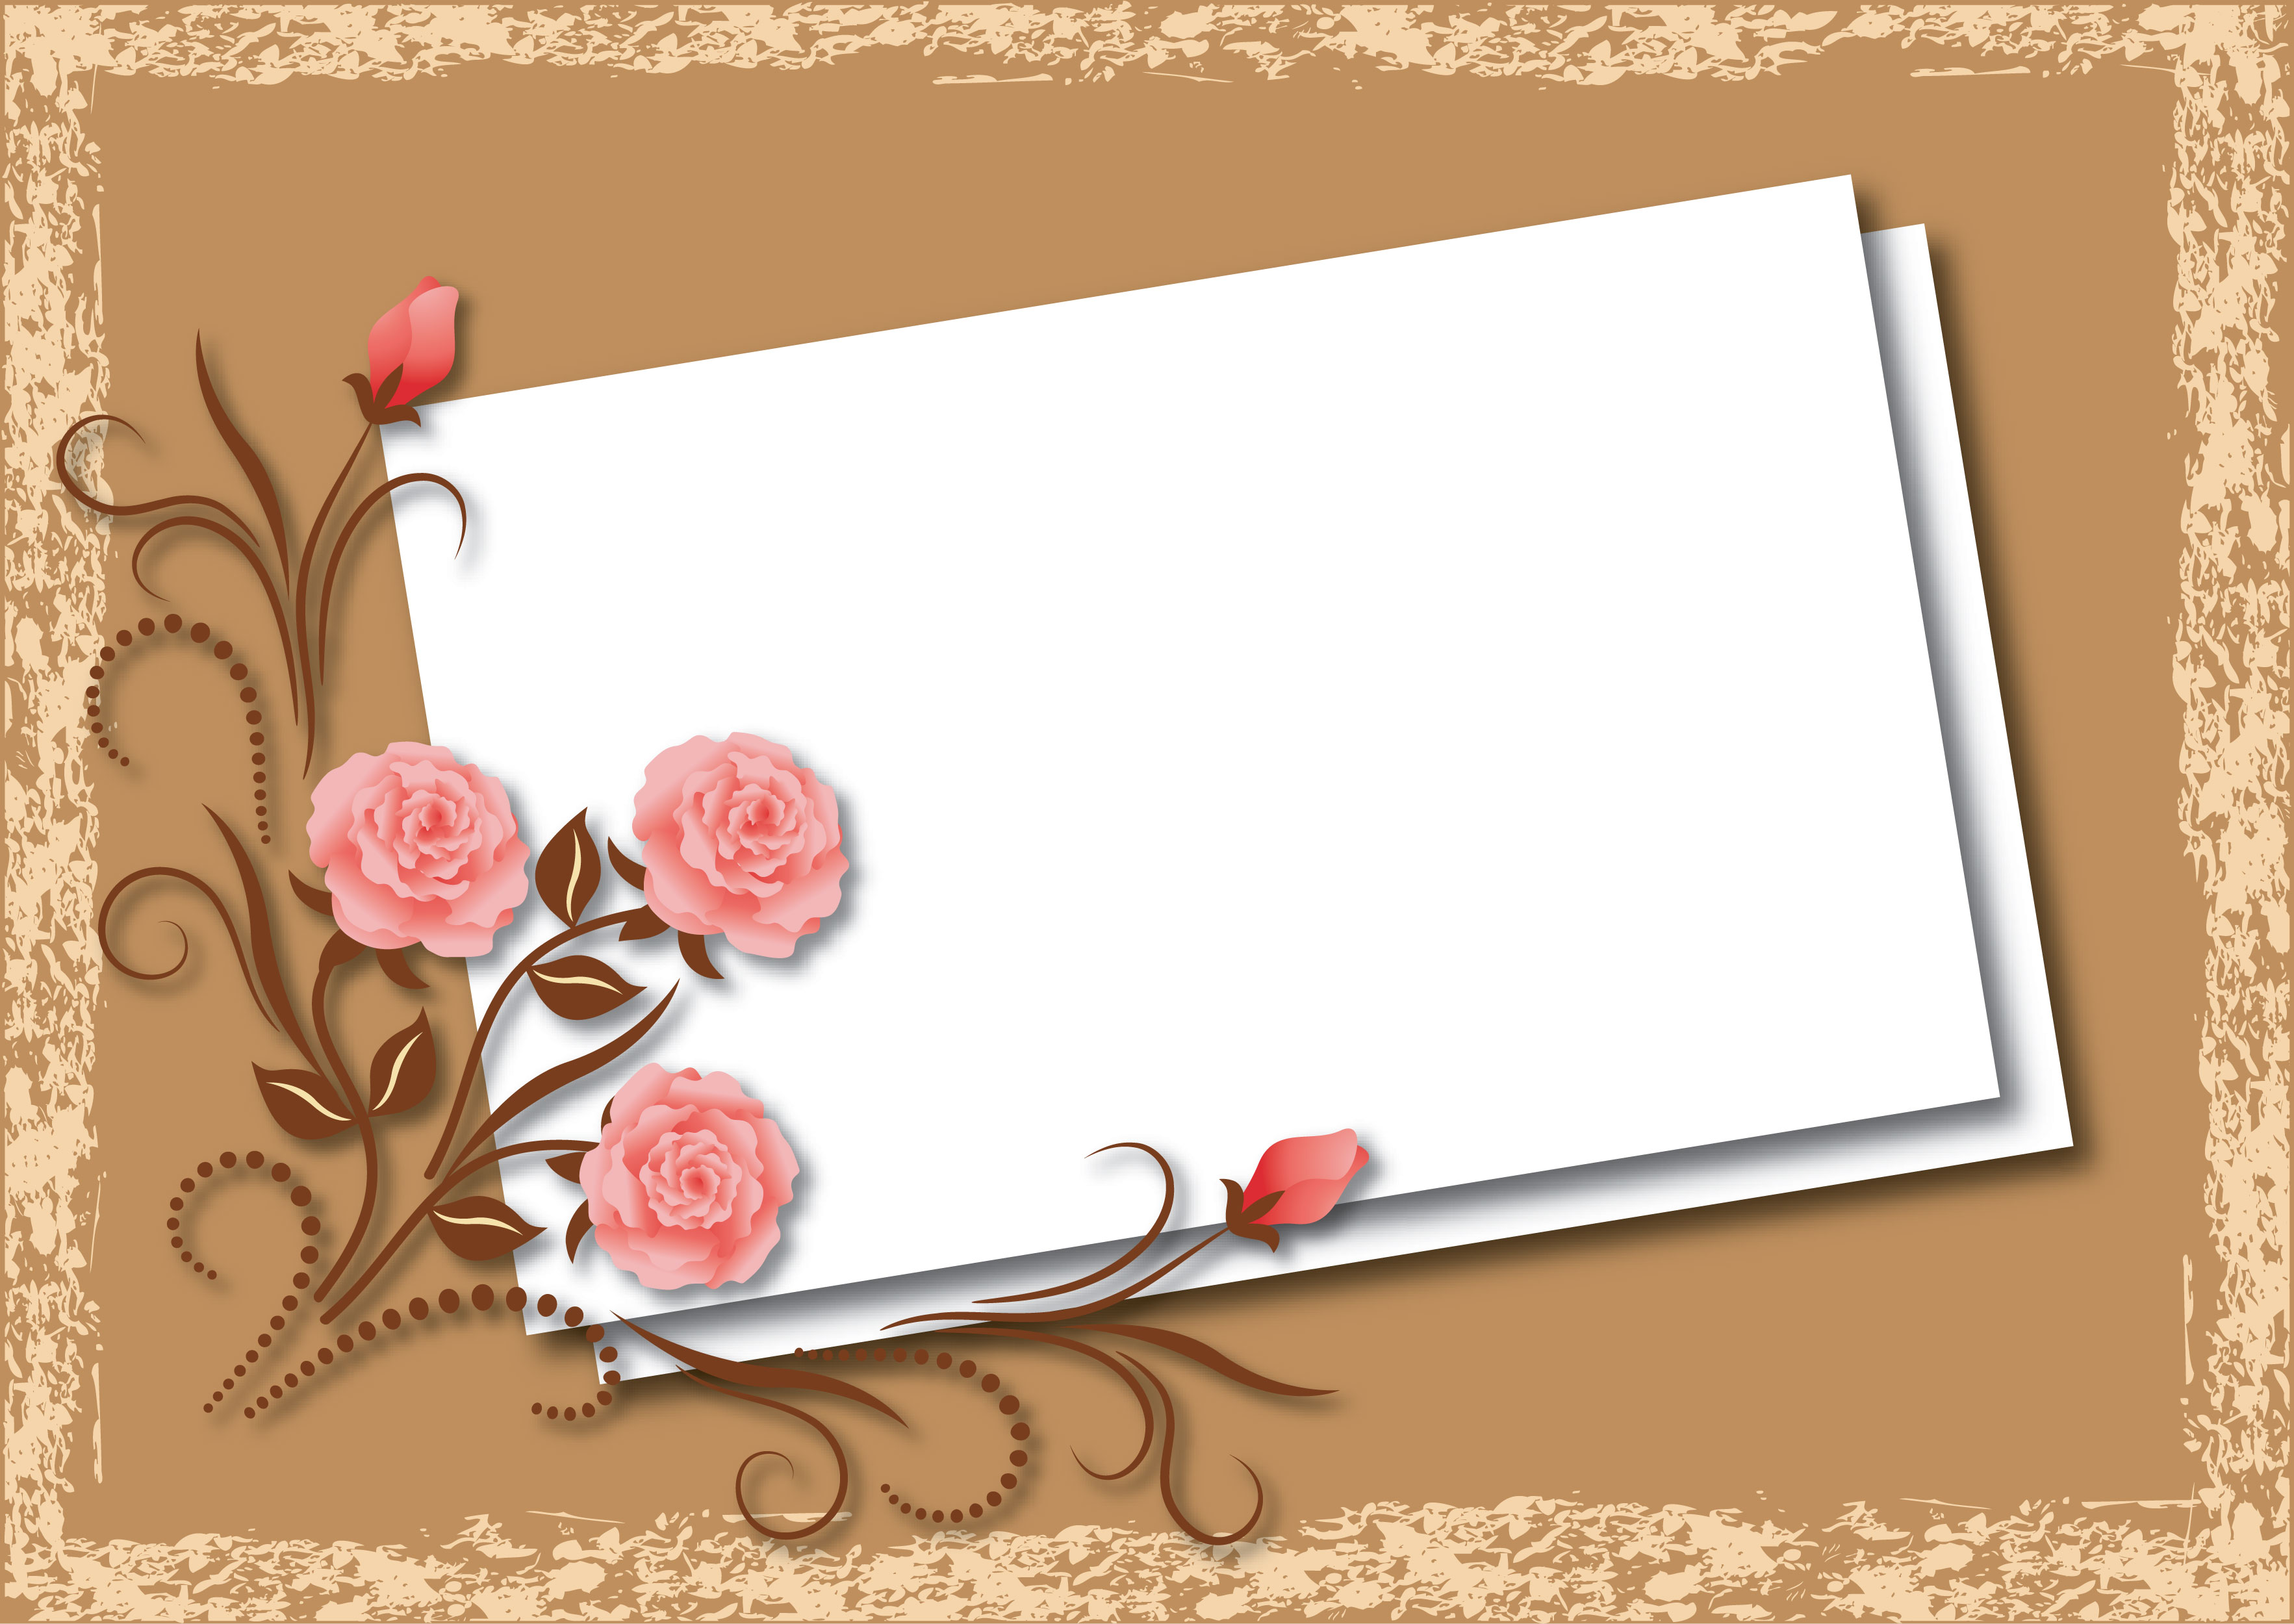 壁紙 背景イラスト 花のフレーム 外枠 No 4 ピンクのバラ 手紙